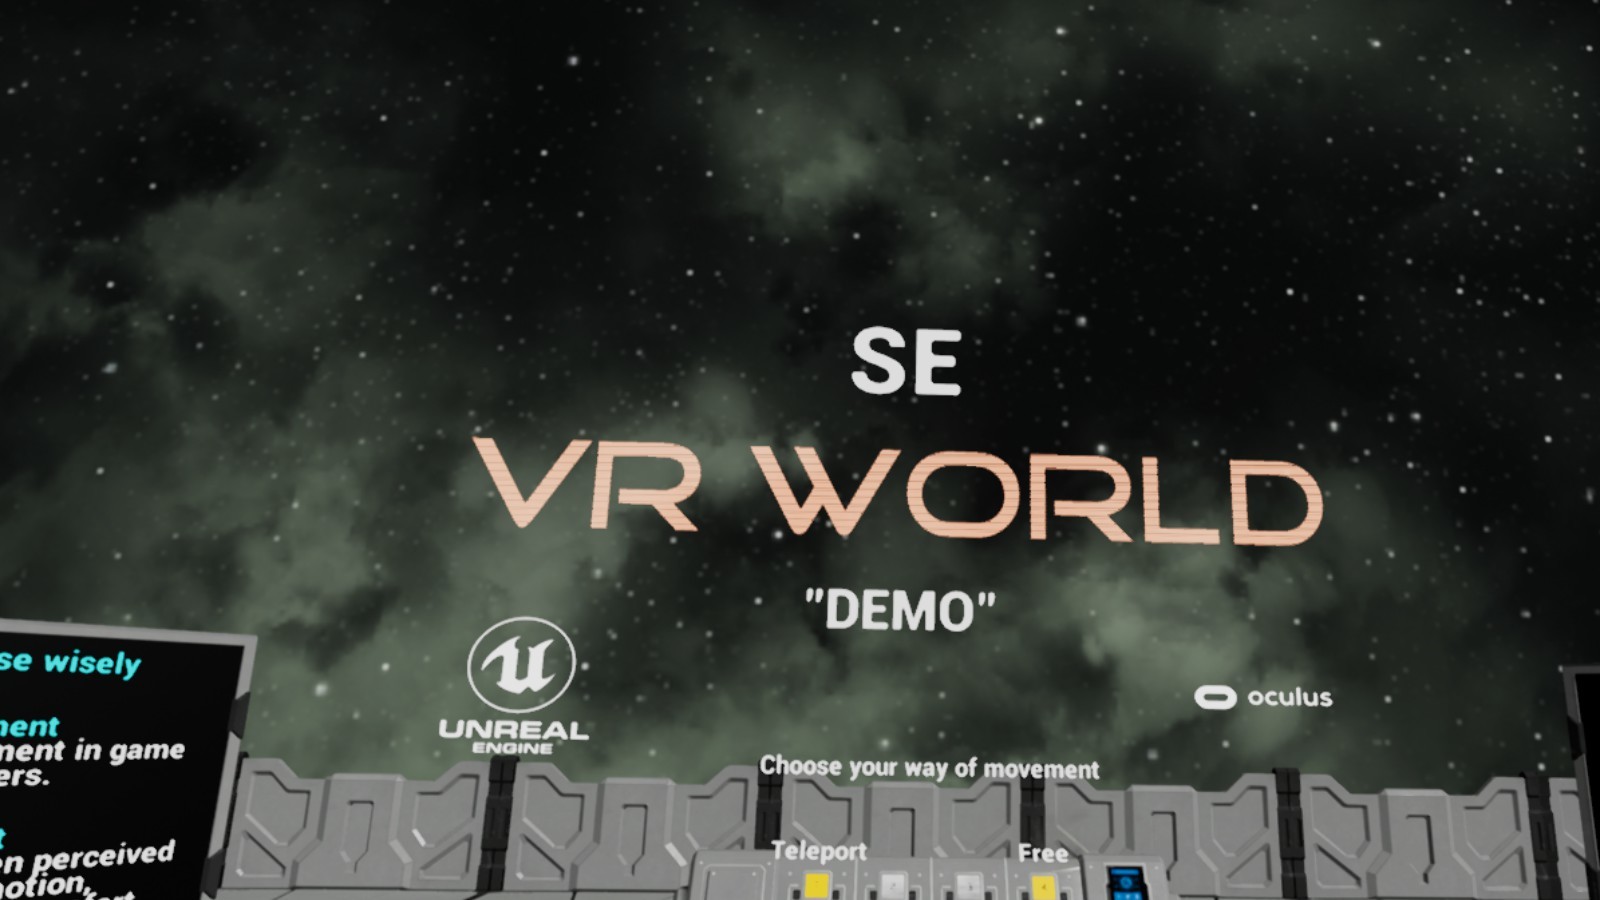 SE VR World Demo on Steam